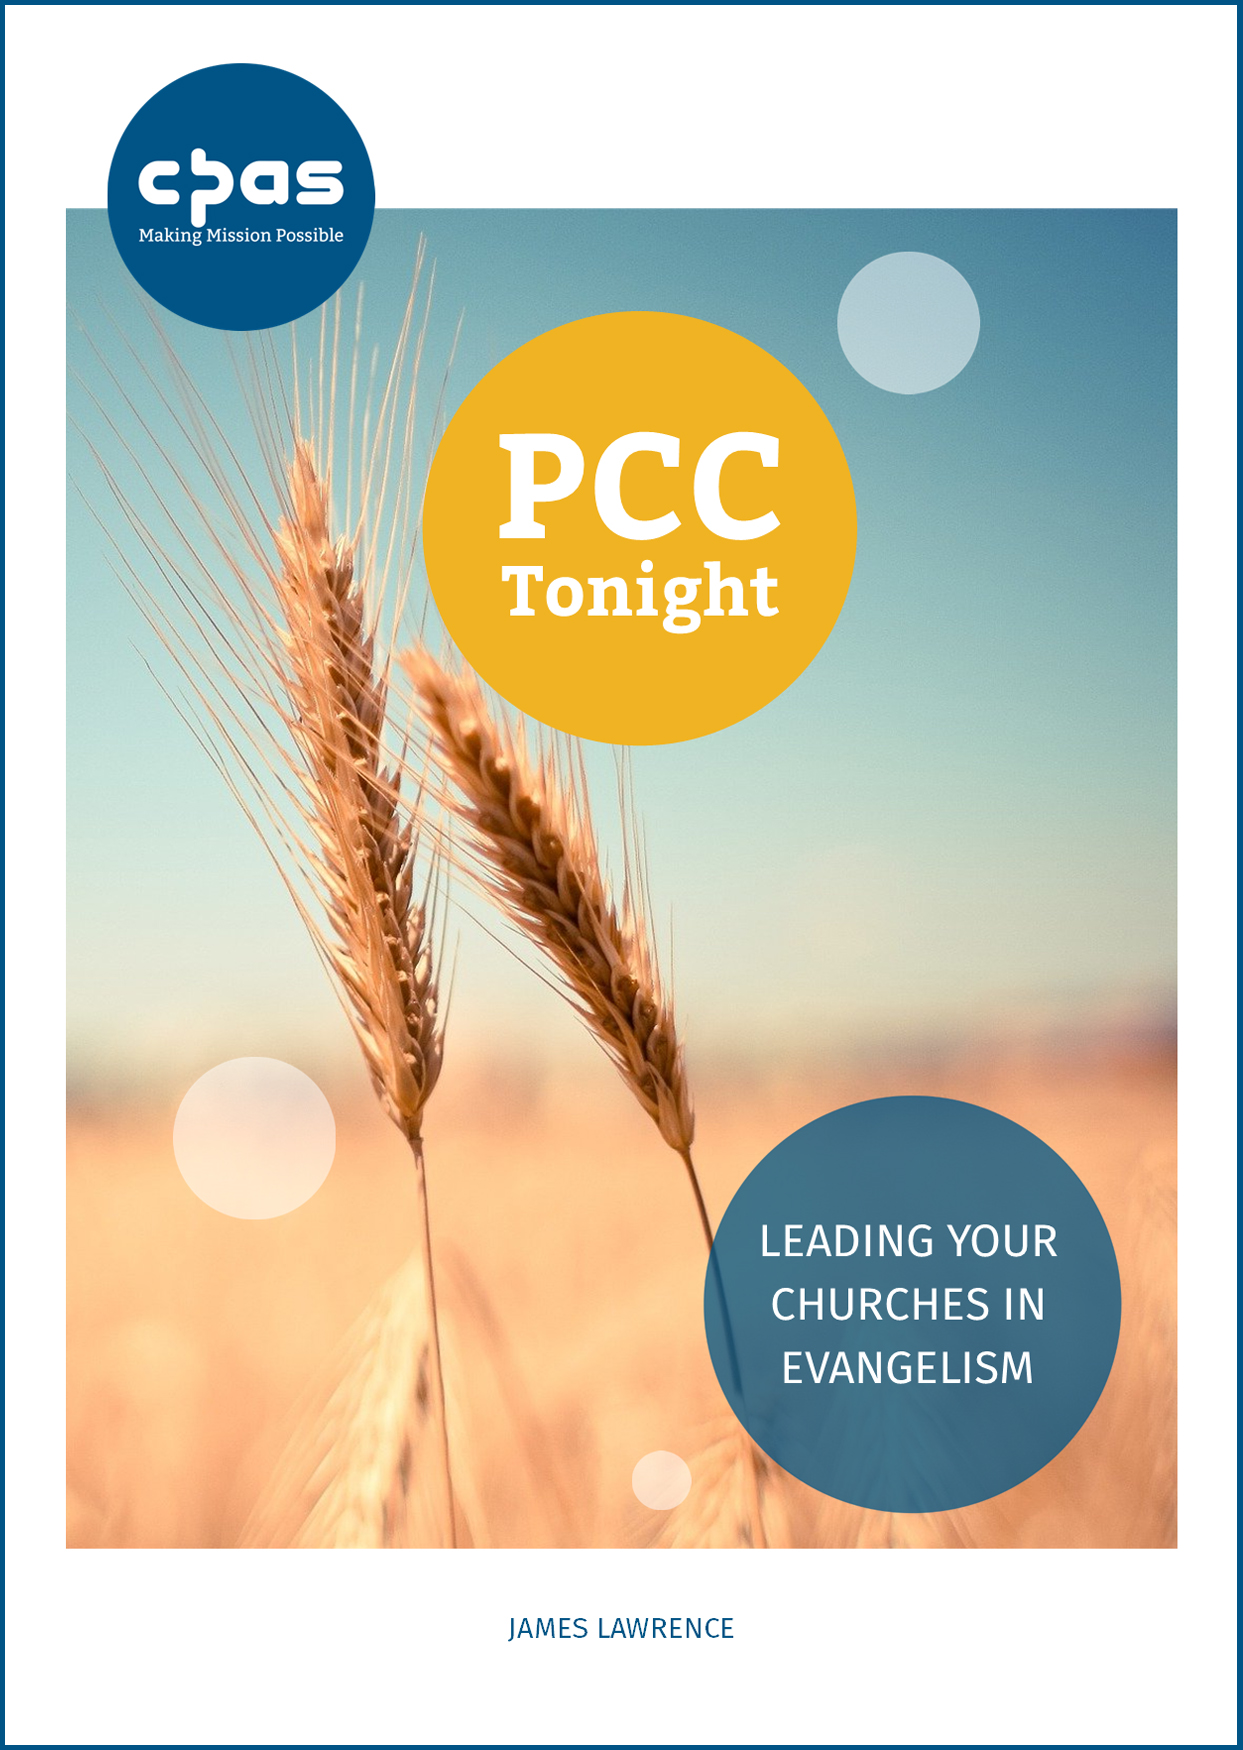 PCC Tonight Evangelism Resource